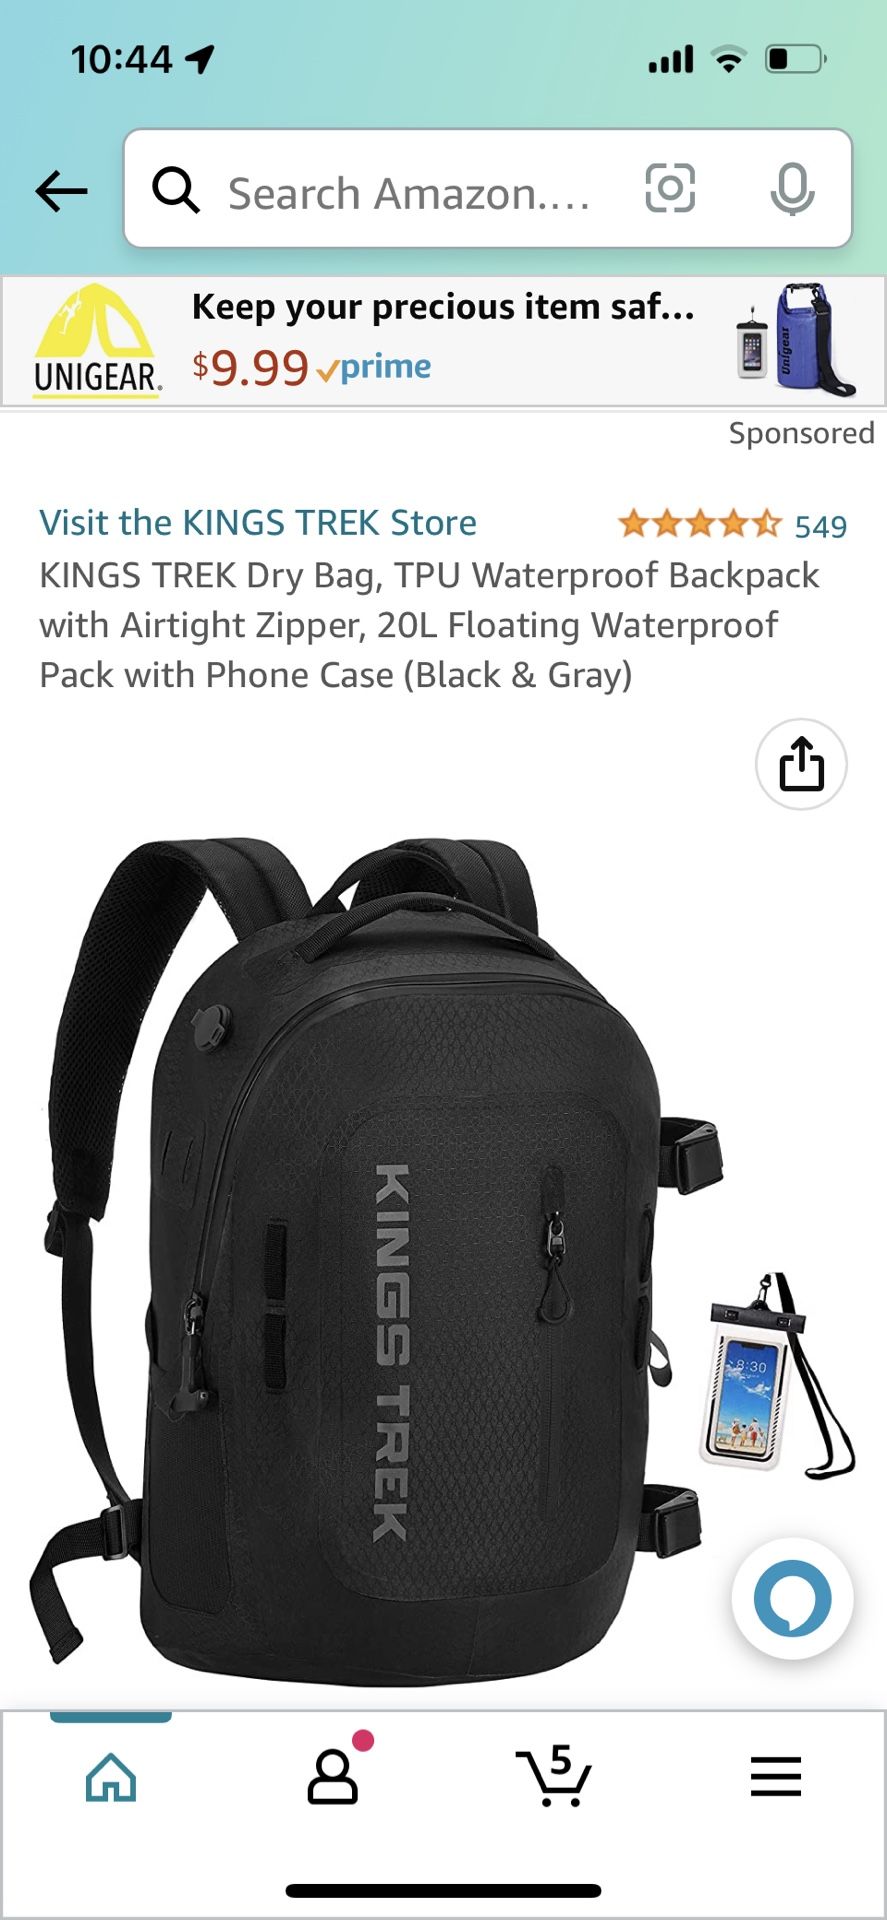  KINGS TREK Dry Bag, TPU Waterproof Backpack with